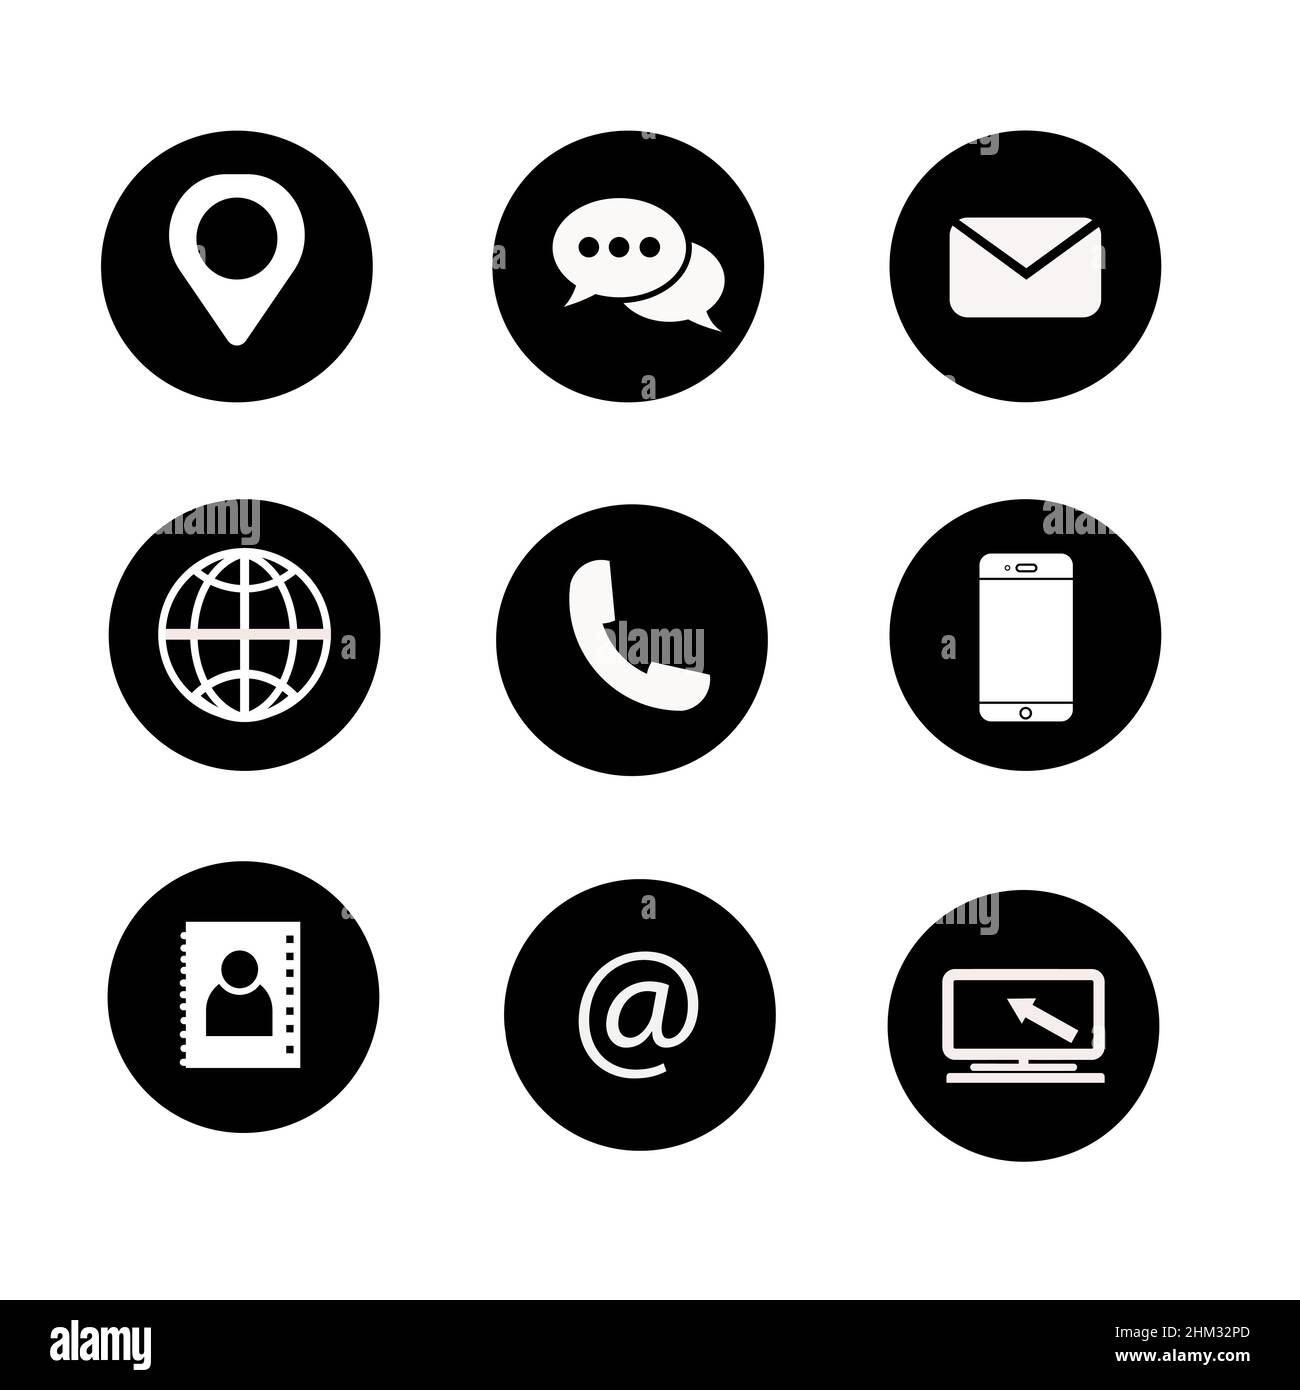 Icona vettoriale astratta su bianco, illustrazioni isolate per grafica e web design. Illustrazione perfetta del pittogramma nero su sfondo bianco. Illustrazione Vettoriale